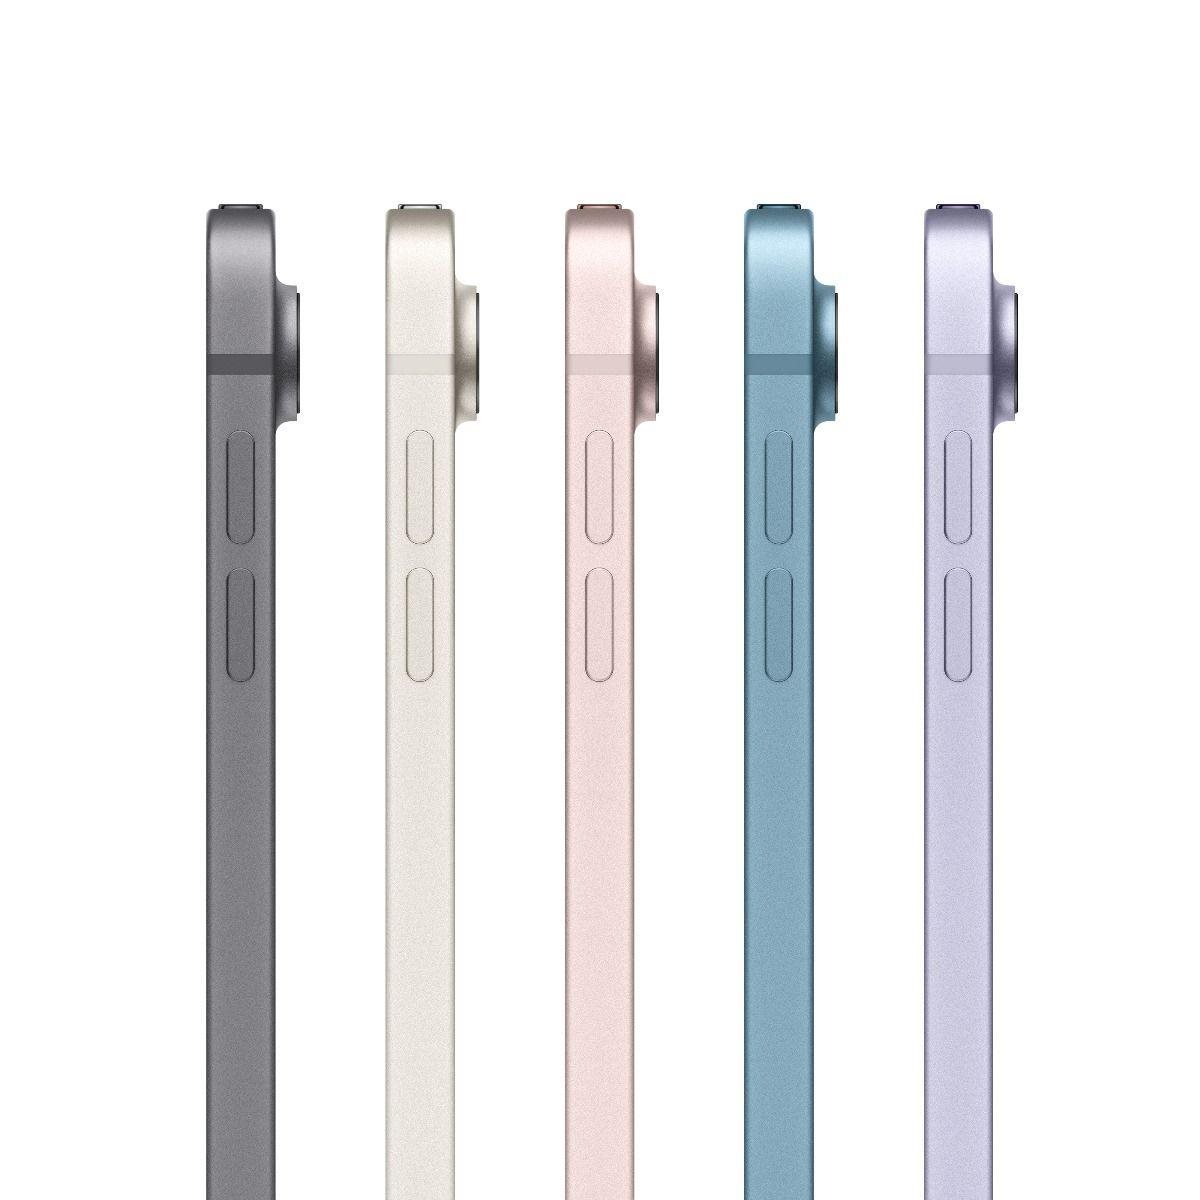 Apple iPad Air 5 10,9"" Wi-Fi + Cellular 64 GB - Starlight1 